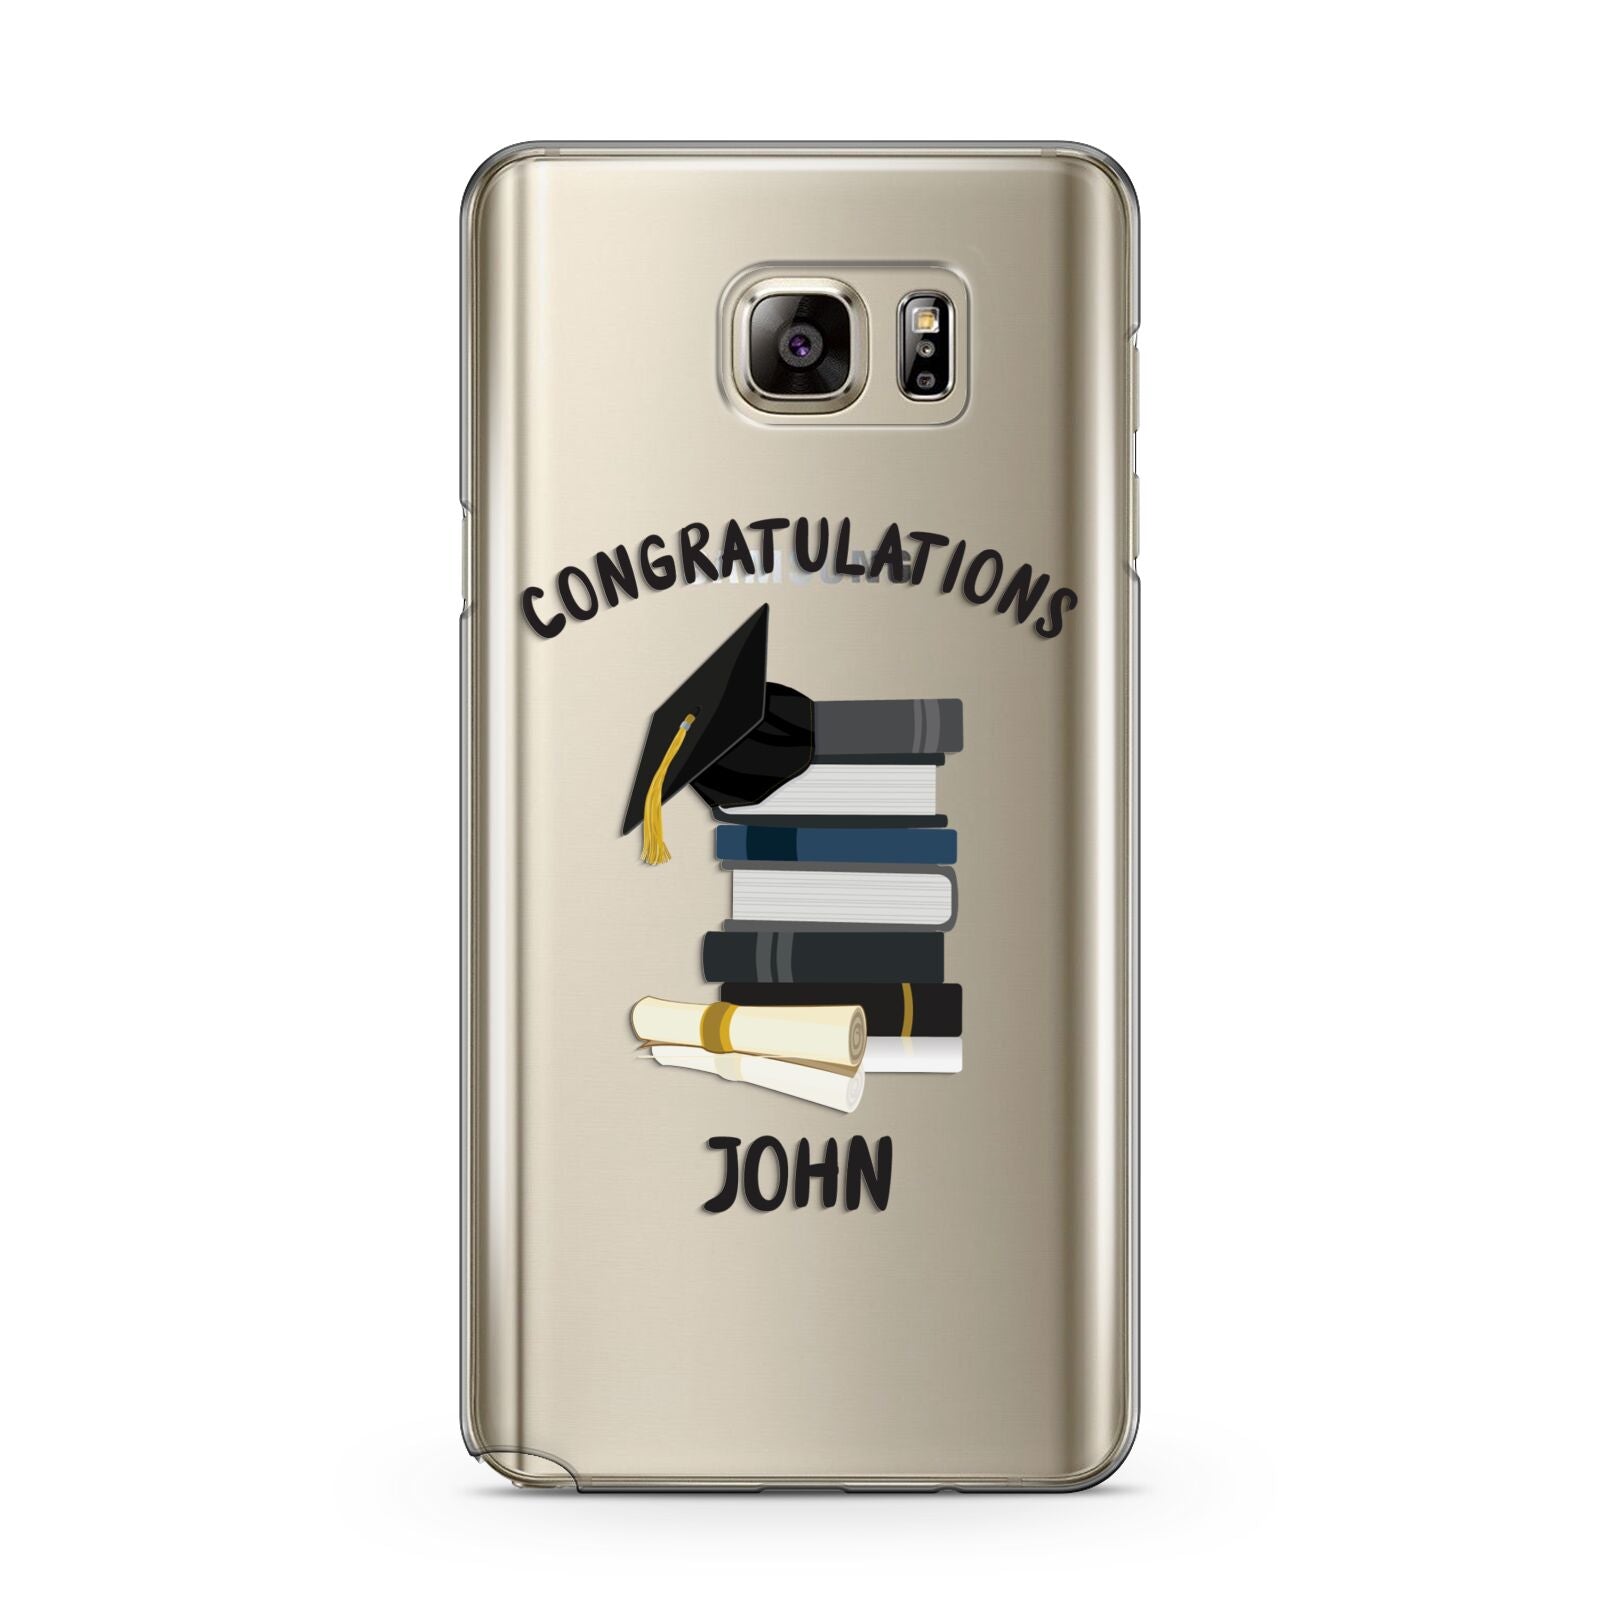 Congratulations Graduate Samsung Galaxy Note 5 Case